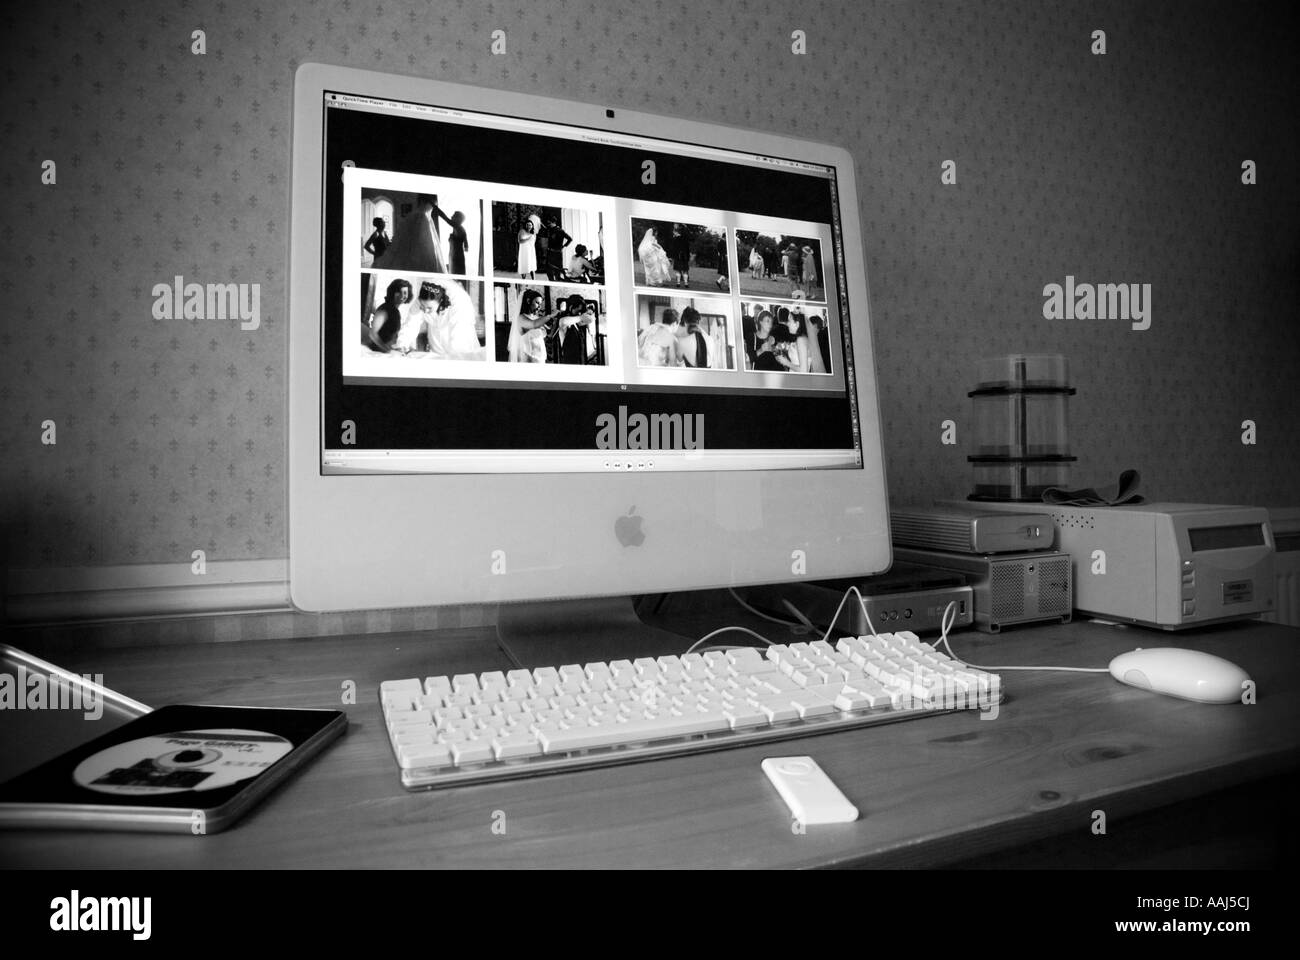 Ordinateur Apple iMac 24 avec grand écran dans un environnement de bureau d'accueil Mai 2007 version monochrome à contraste élevé Banque D'Images